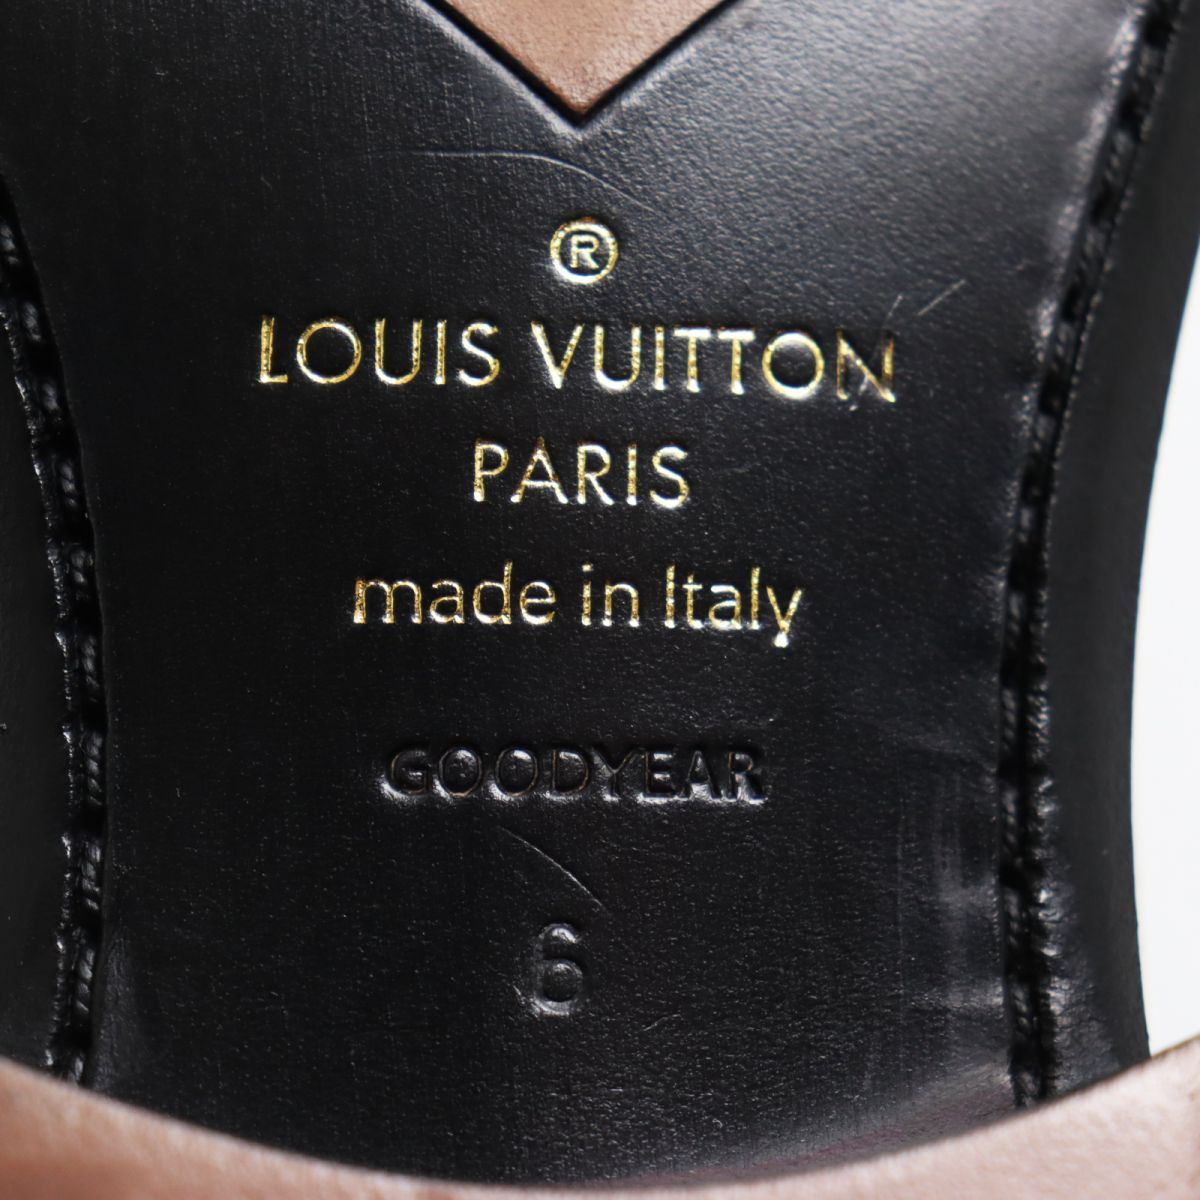 極美品●LOUIS VUITTON ルイヴィトン グッドイヤー製法 プレーントゥ パンチングデザイン レザーシューズ ブラック 6 イタリア製 メンズ